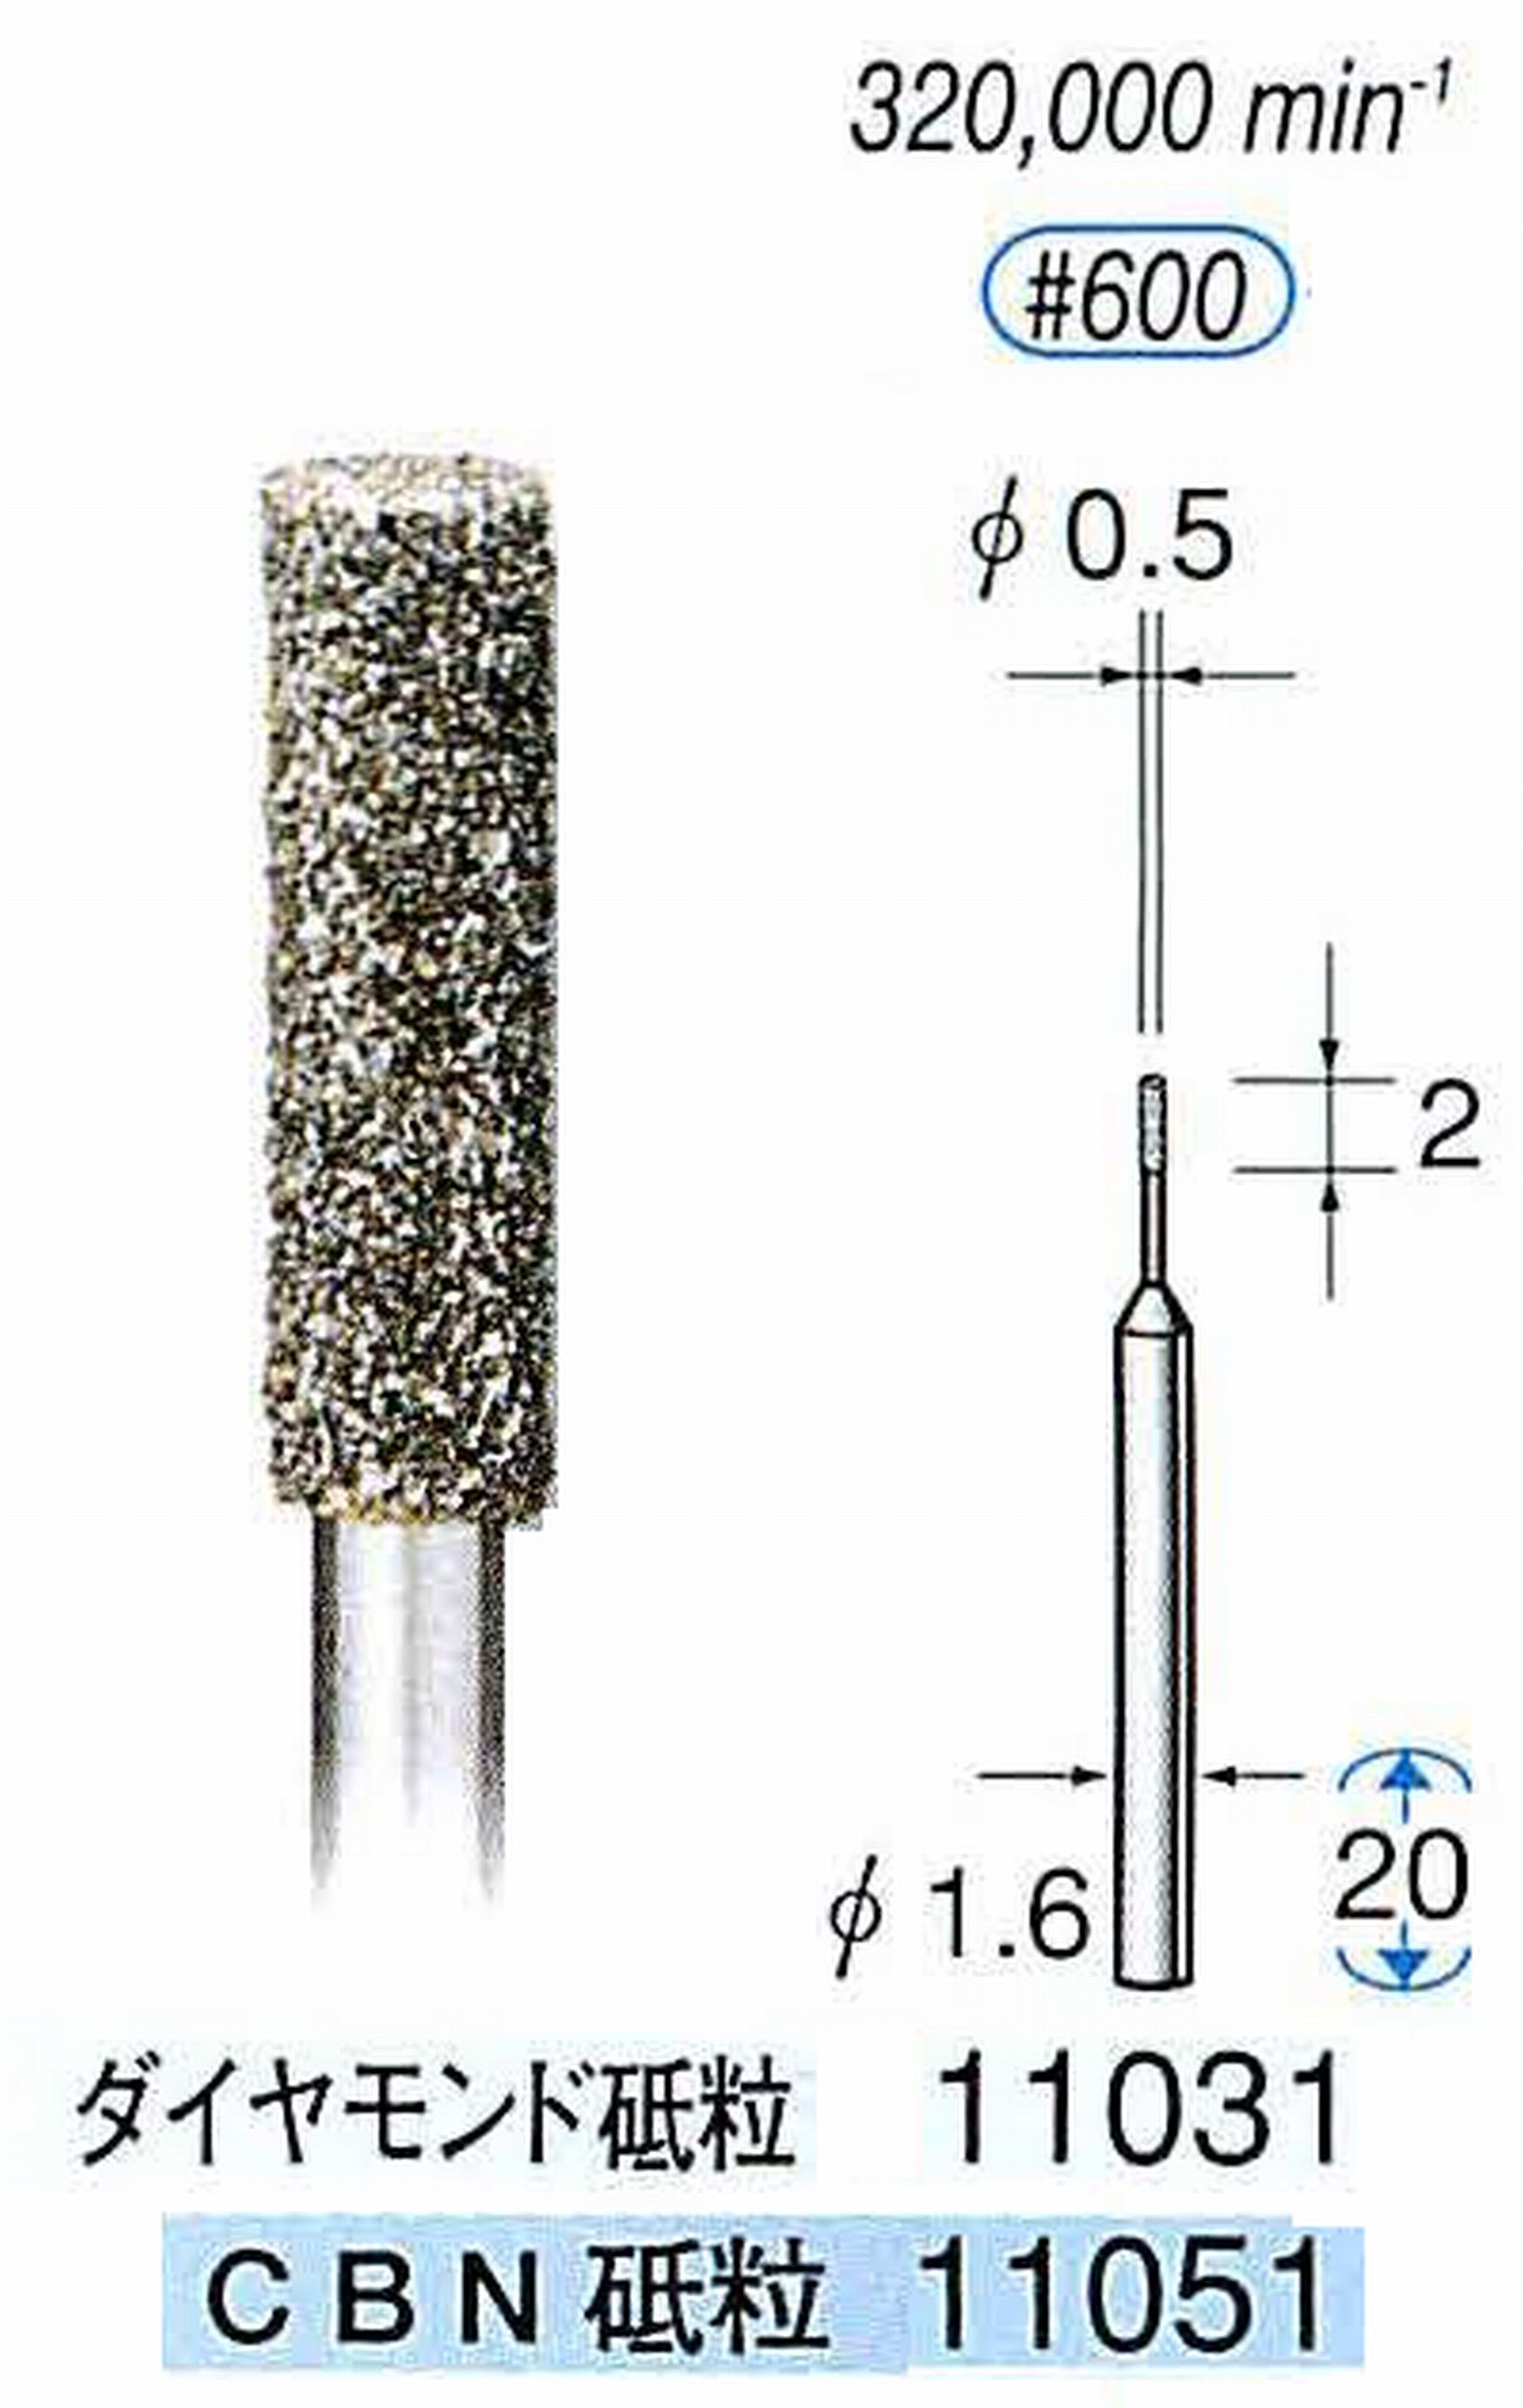 ナカニシ/NAKANISHI 電着CBNバー(ミニチュアタイプ)CBN砥粒 軸径(シャンク)φ1.6mm 11051